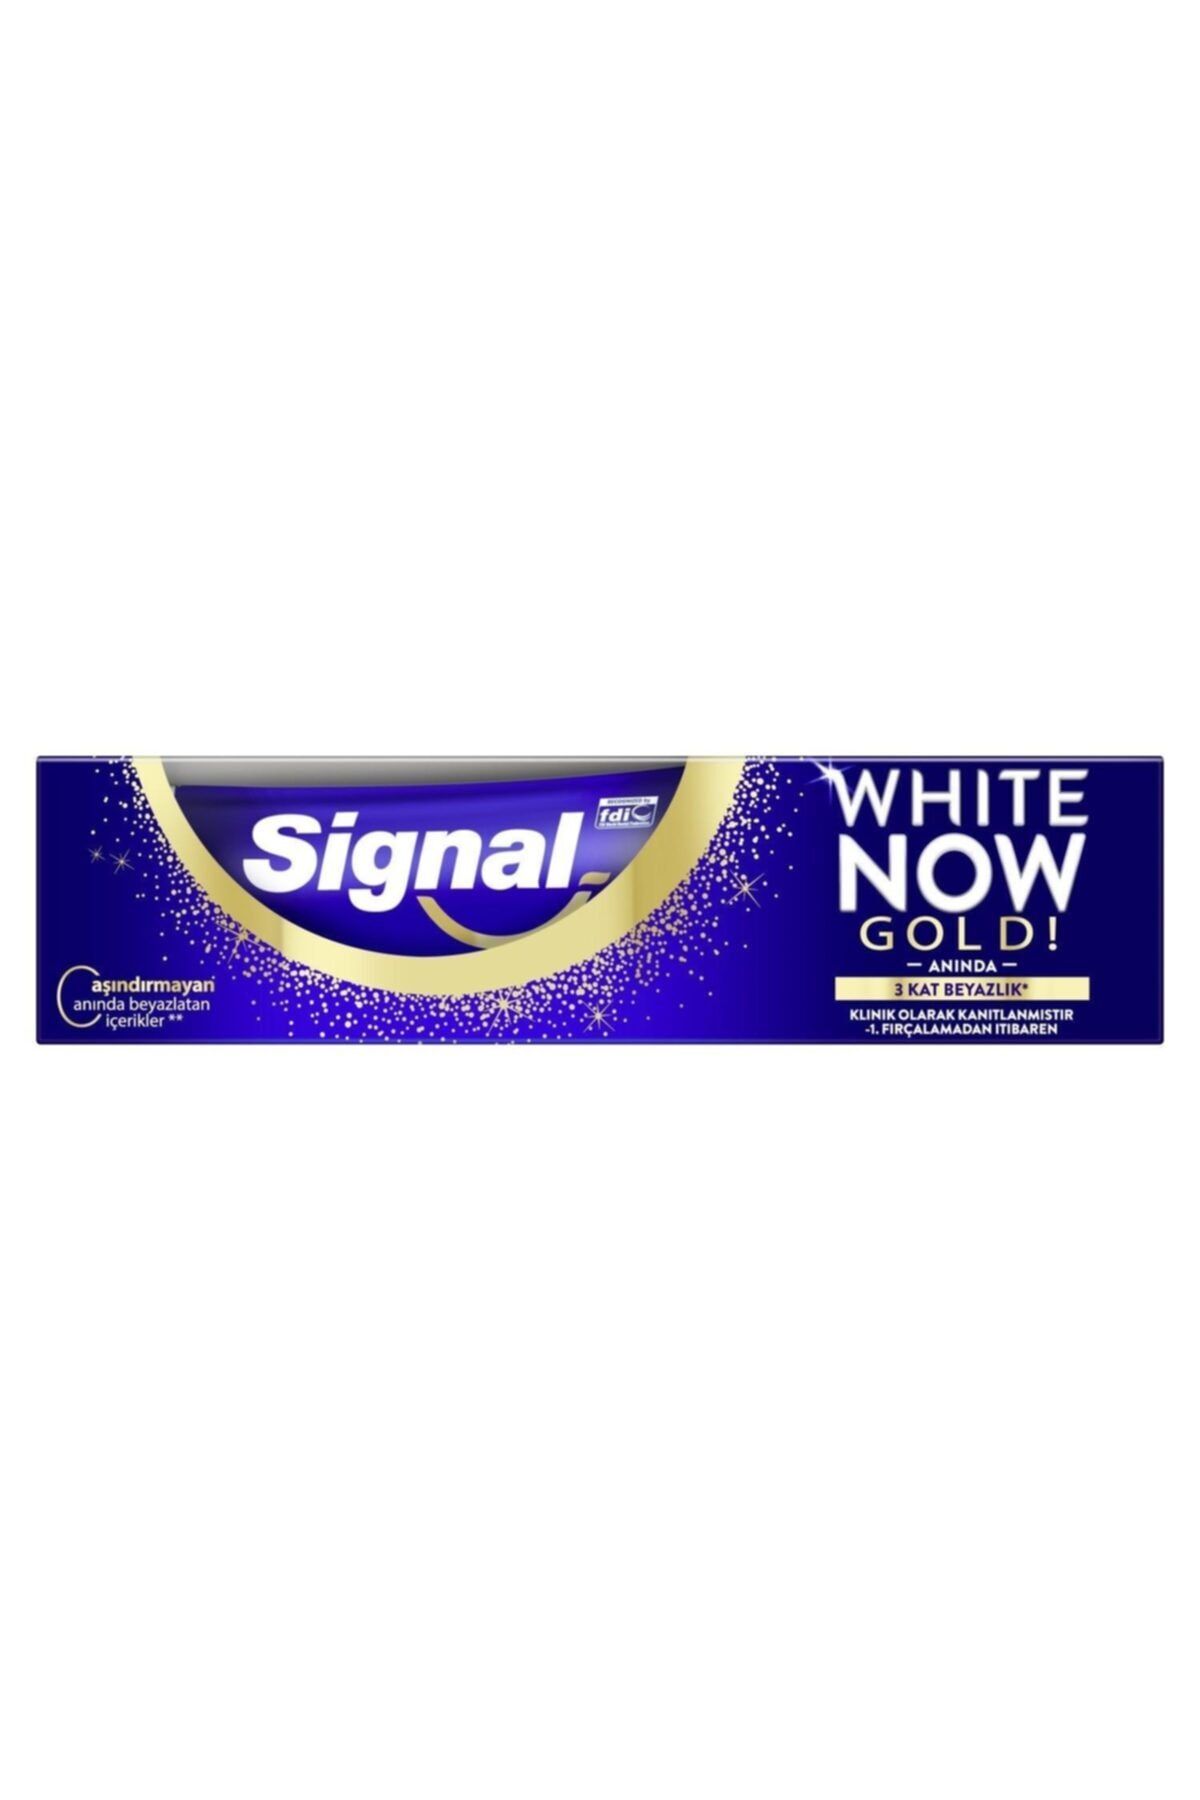 Now gold. Зубная паста Signal White Now. Зубная паста Signal 2. Зубная паста Paramax. Коричневая зубная паста.